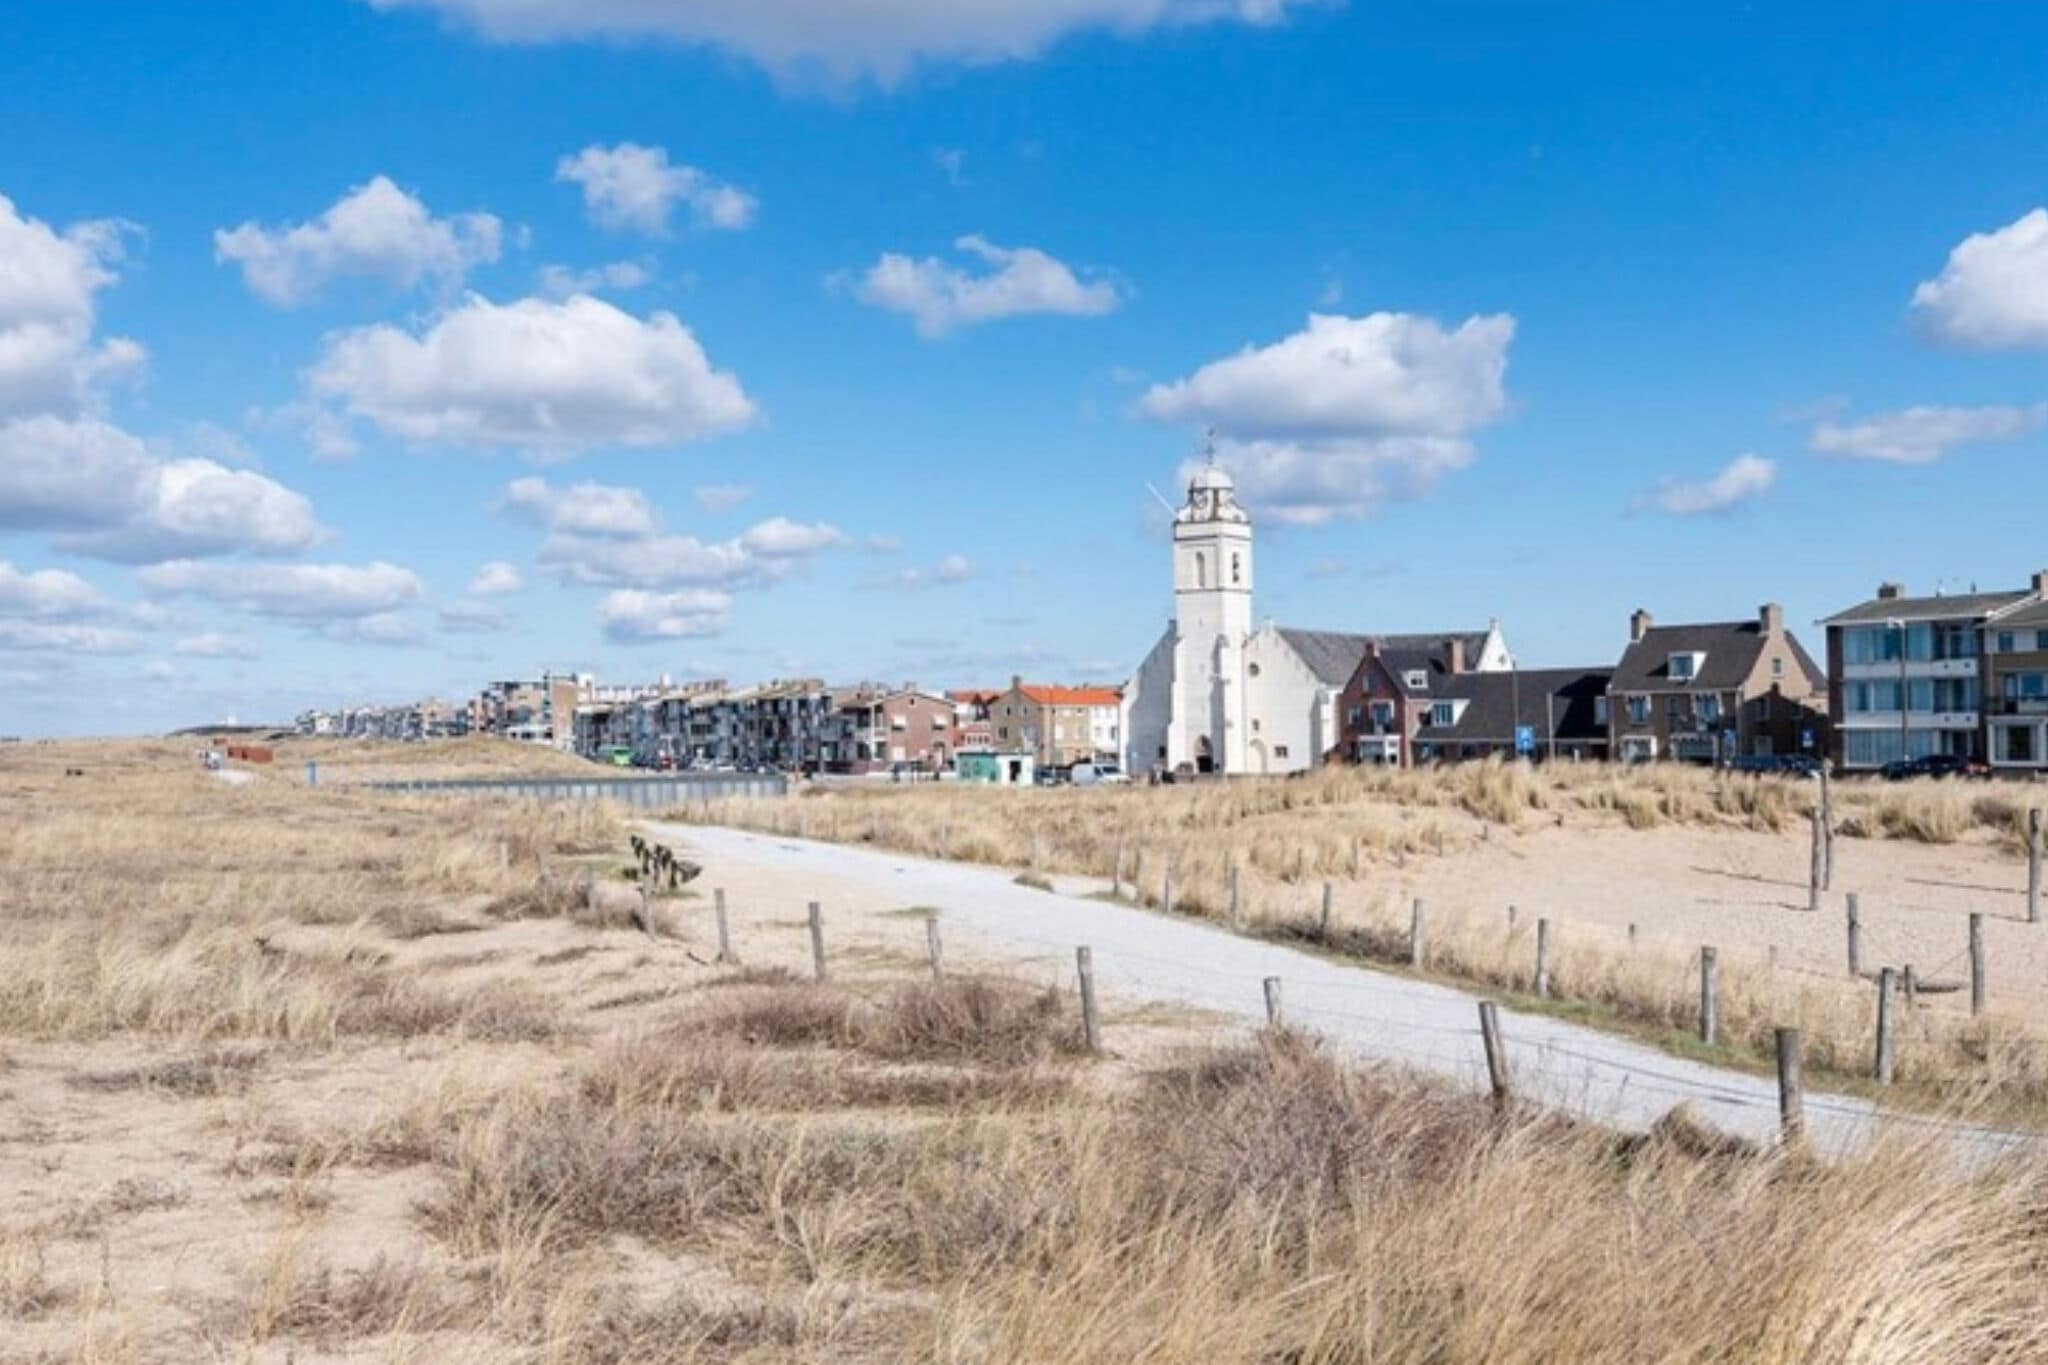 Mooi vakantiehuis vlakbij zee in Katwijk